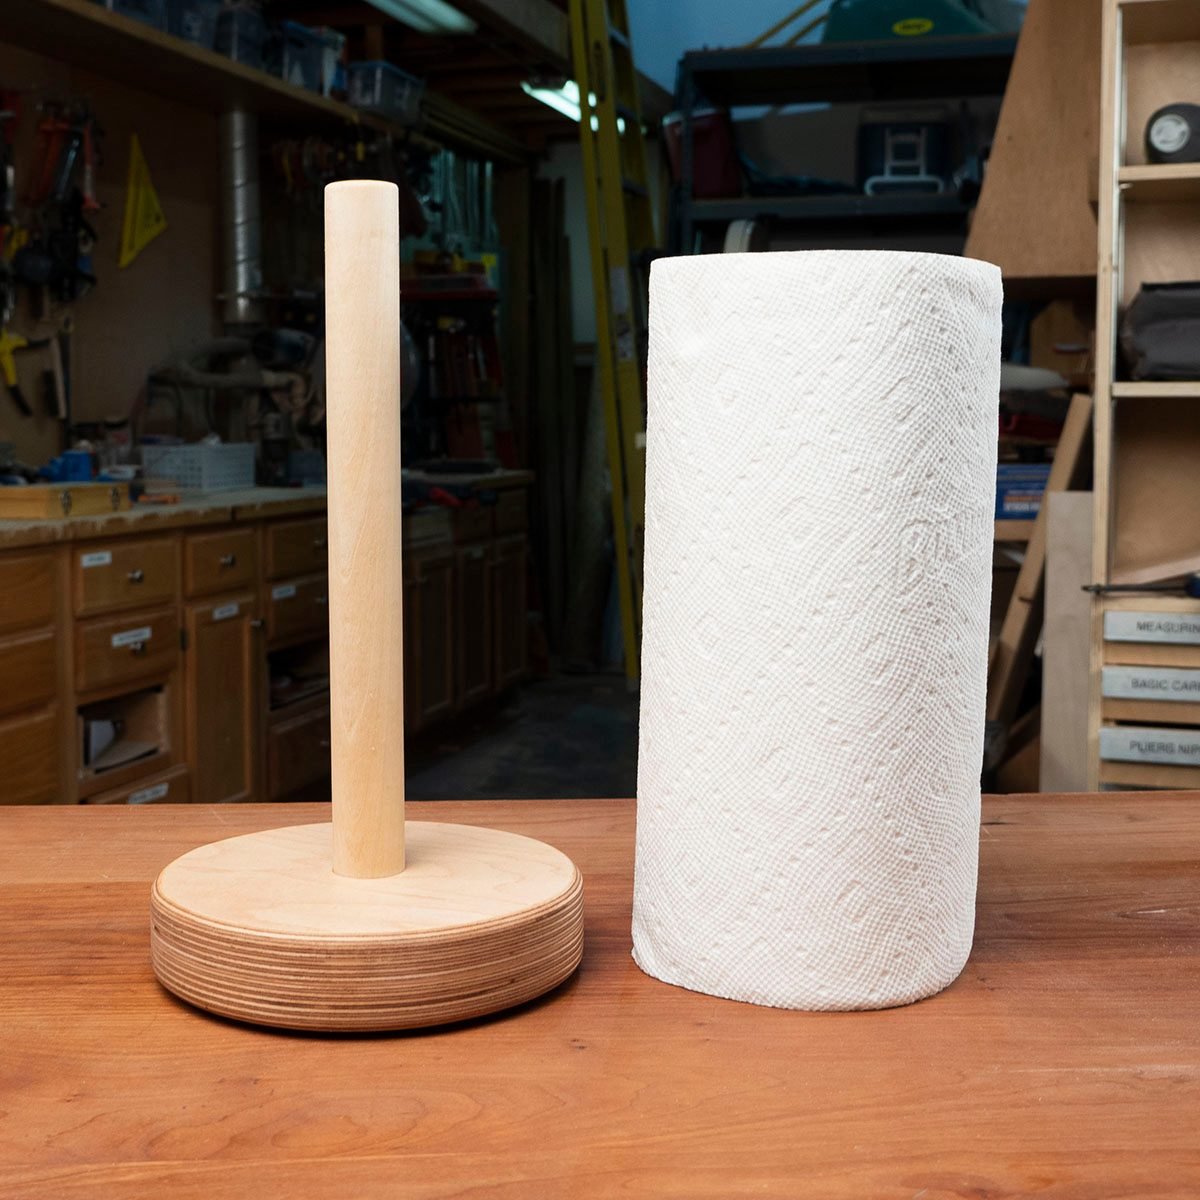 How to Make a Paper Towel Holder, DIY Paper Towel Holder